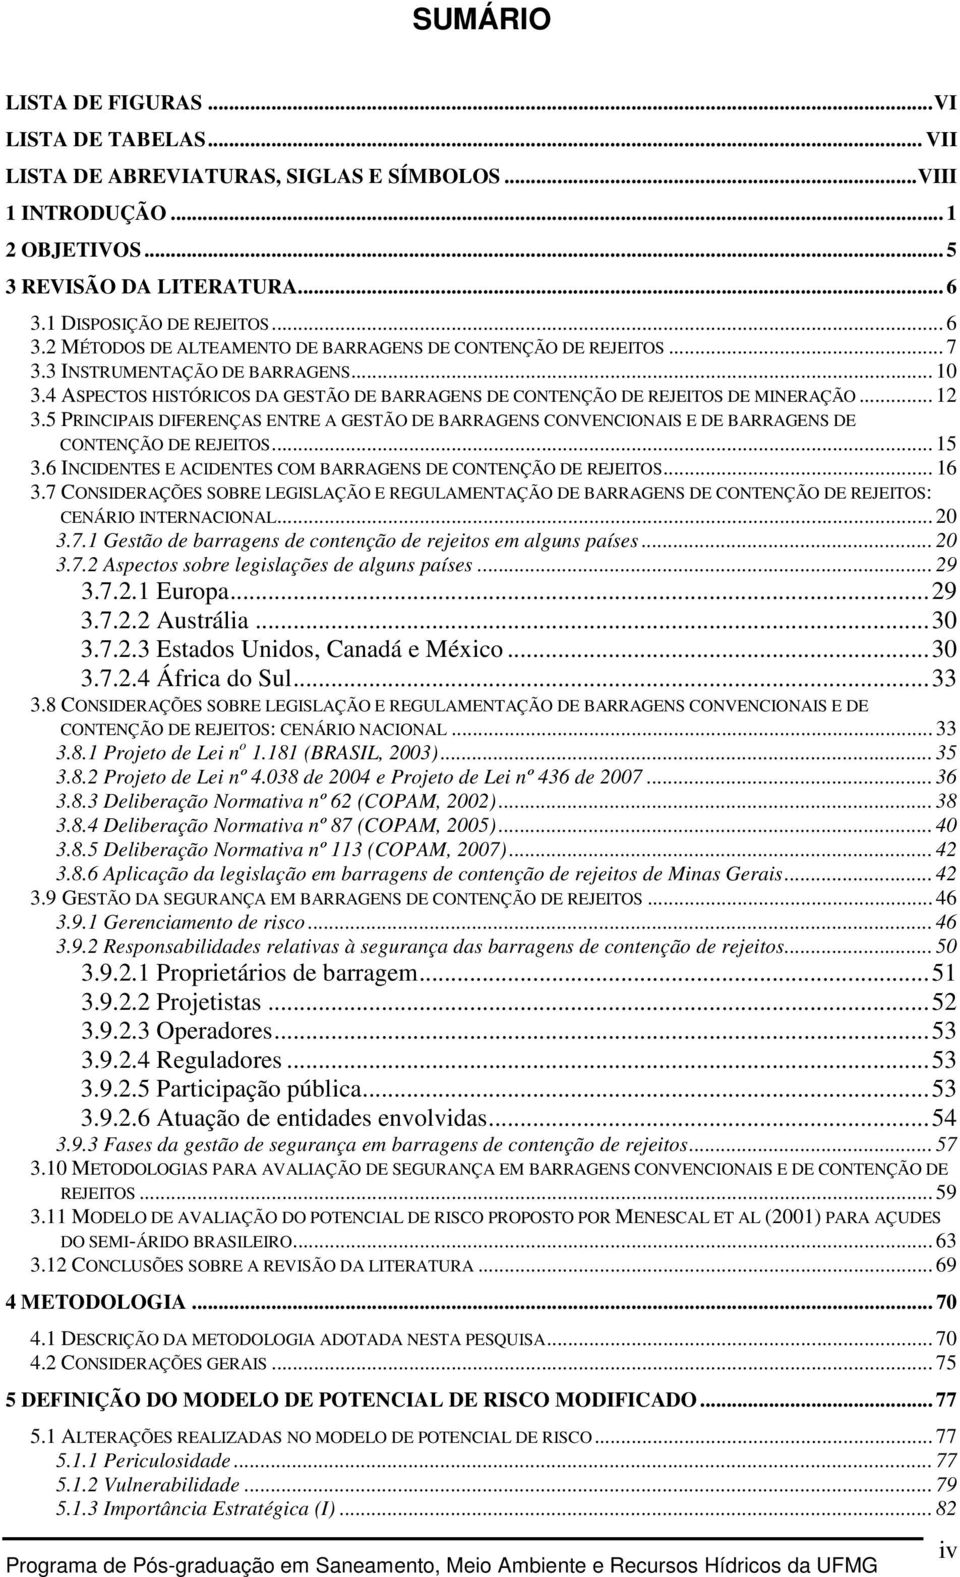 4 ASPECTOS HISTÓRICOS DA GESTÃO DE BARRAGENS DE CONTENÇÃO DE REJEITOS DE MINERAÇÃO... 12 3.5 PRINCIPAIS DIFERENÇAS ENTRE A GESTÃO DE BARRAGENS CONVENCIONAIS E DE BARRAGENS DE CONTENÇÃO DE REJEITOS.